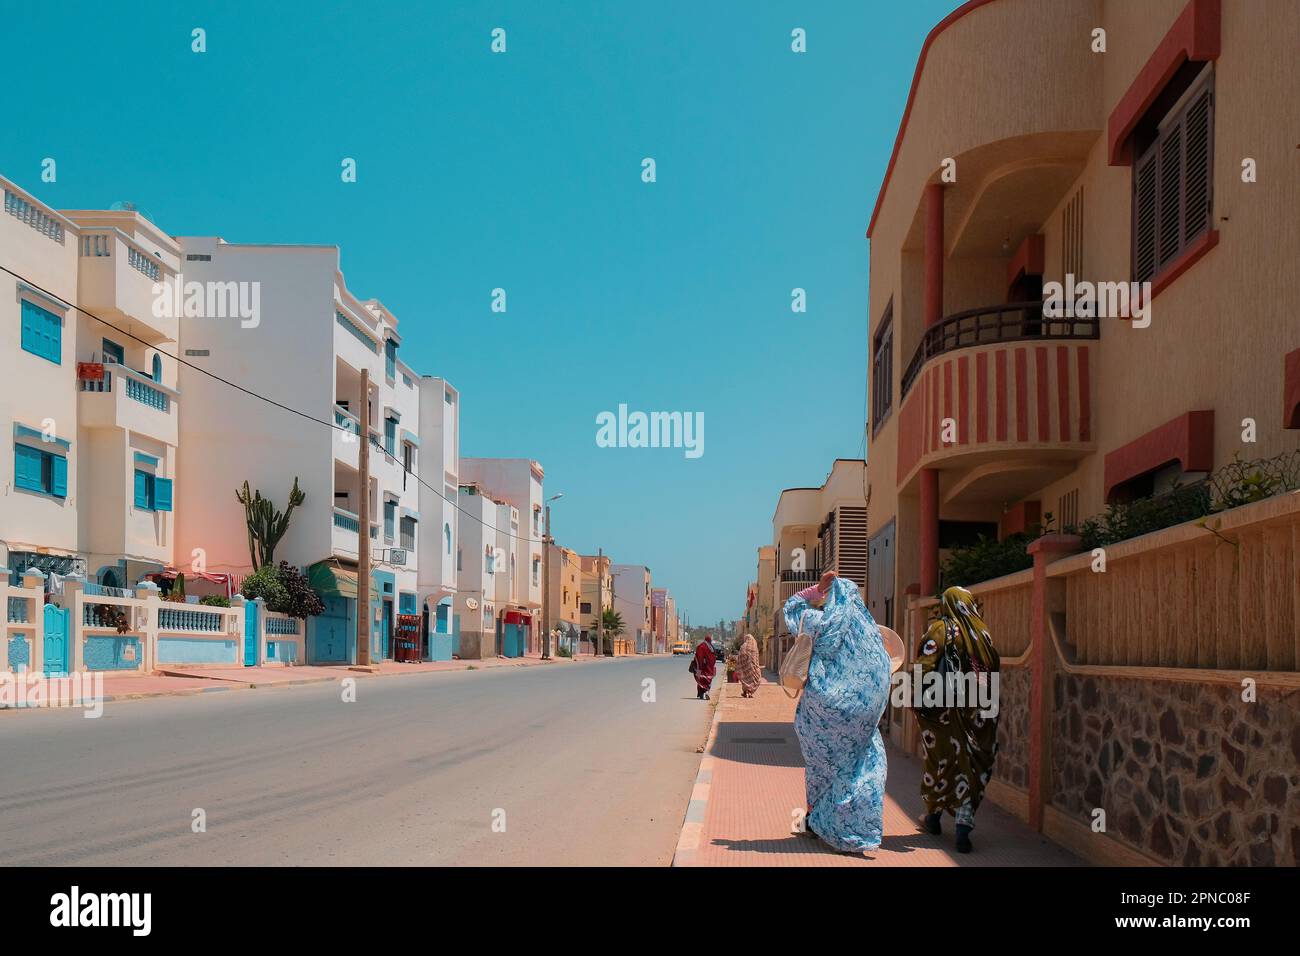 Quatre musulmanes couvertes marchent sur un trottoir à Sidi Ifni, Maroc, sur le Ramadan. Rue bordée de bâtiments résidentiels bas des deux côtés. Ville côtière. Banque D'Images